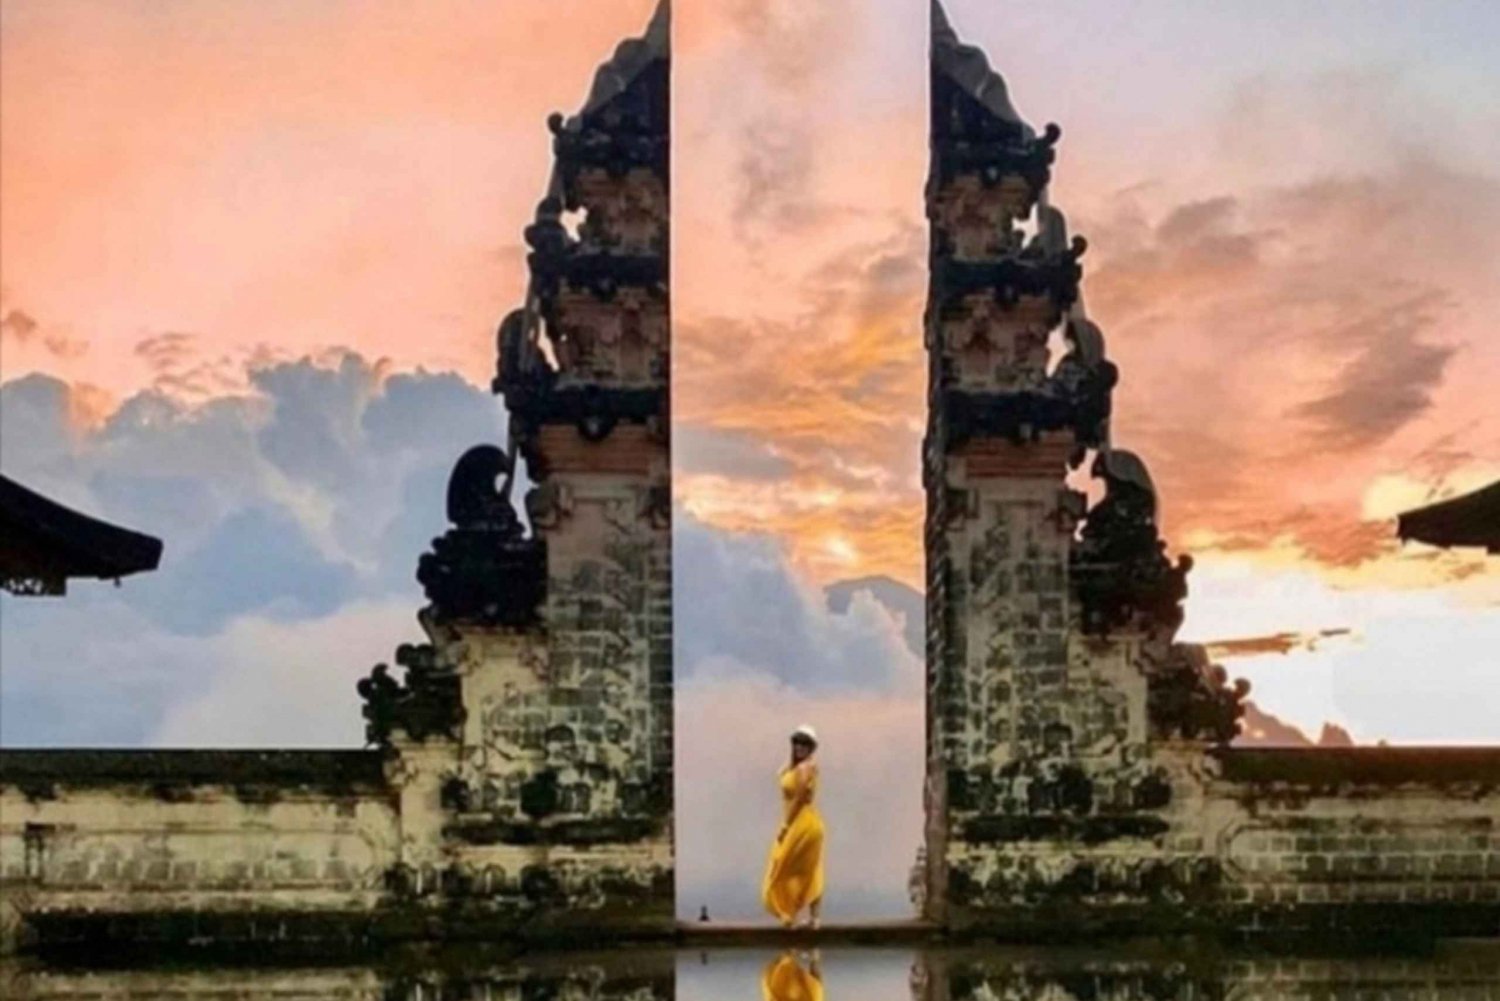 Passeio ao nascer do sol em Bali Lempuyang